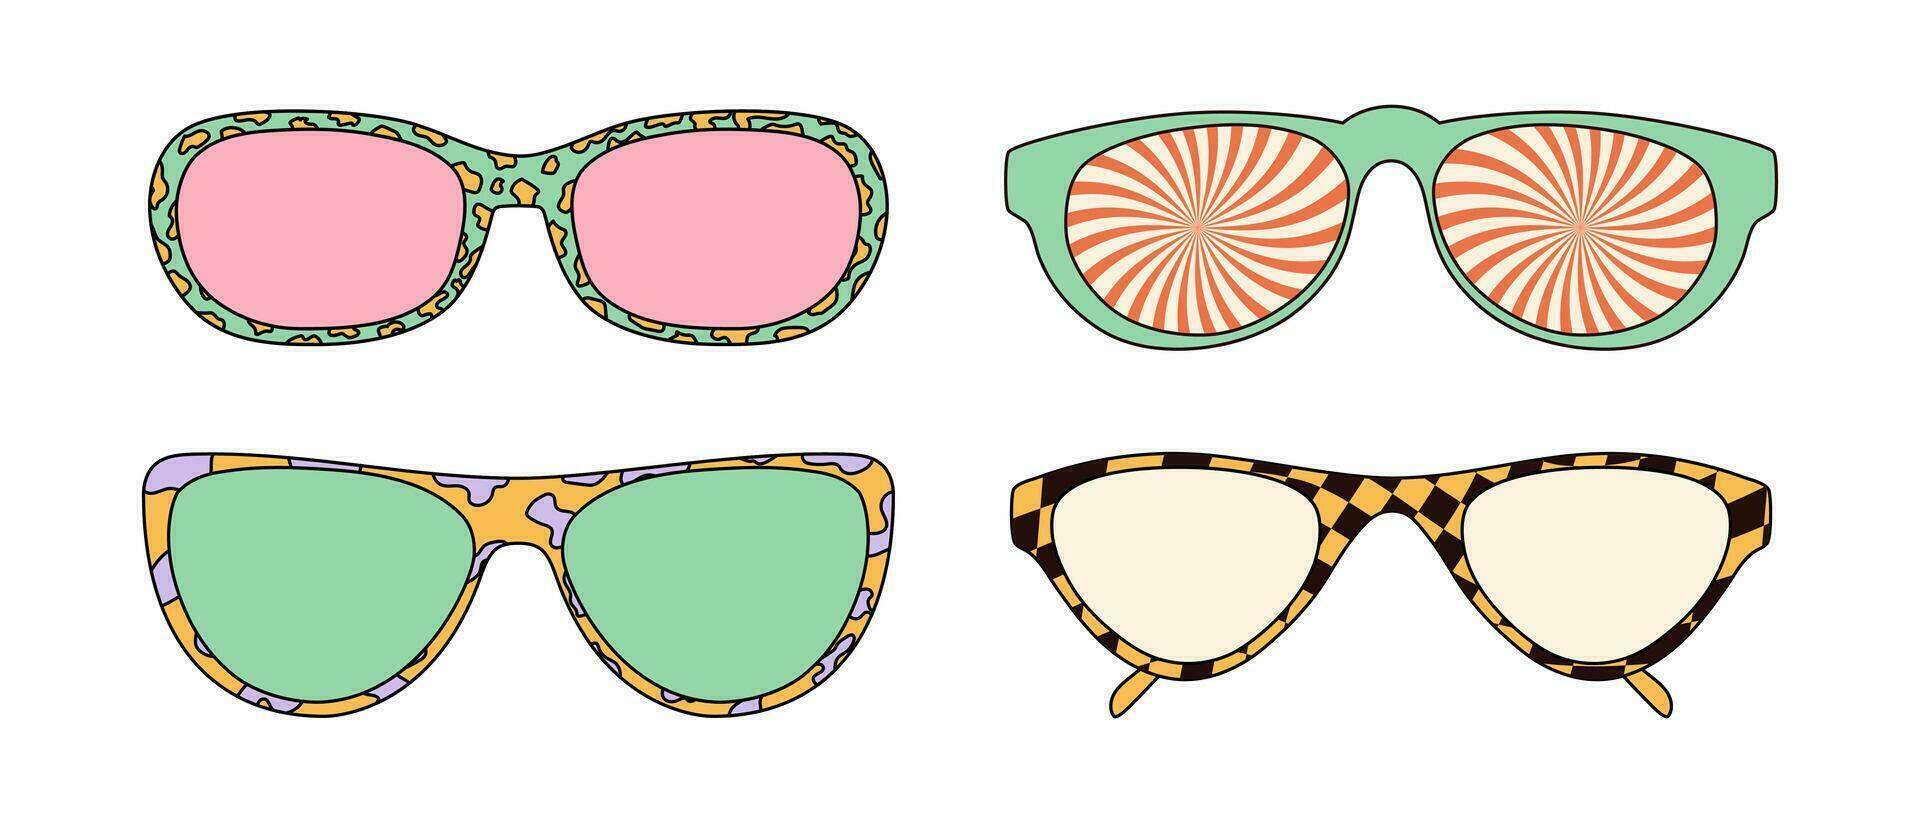 trippy oculos de sol com groovy impressões e vintage cores. vetor ilustrações isolado em branco fundo.